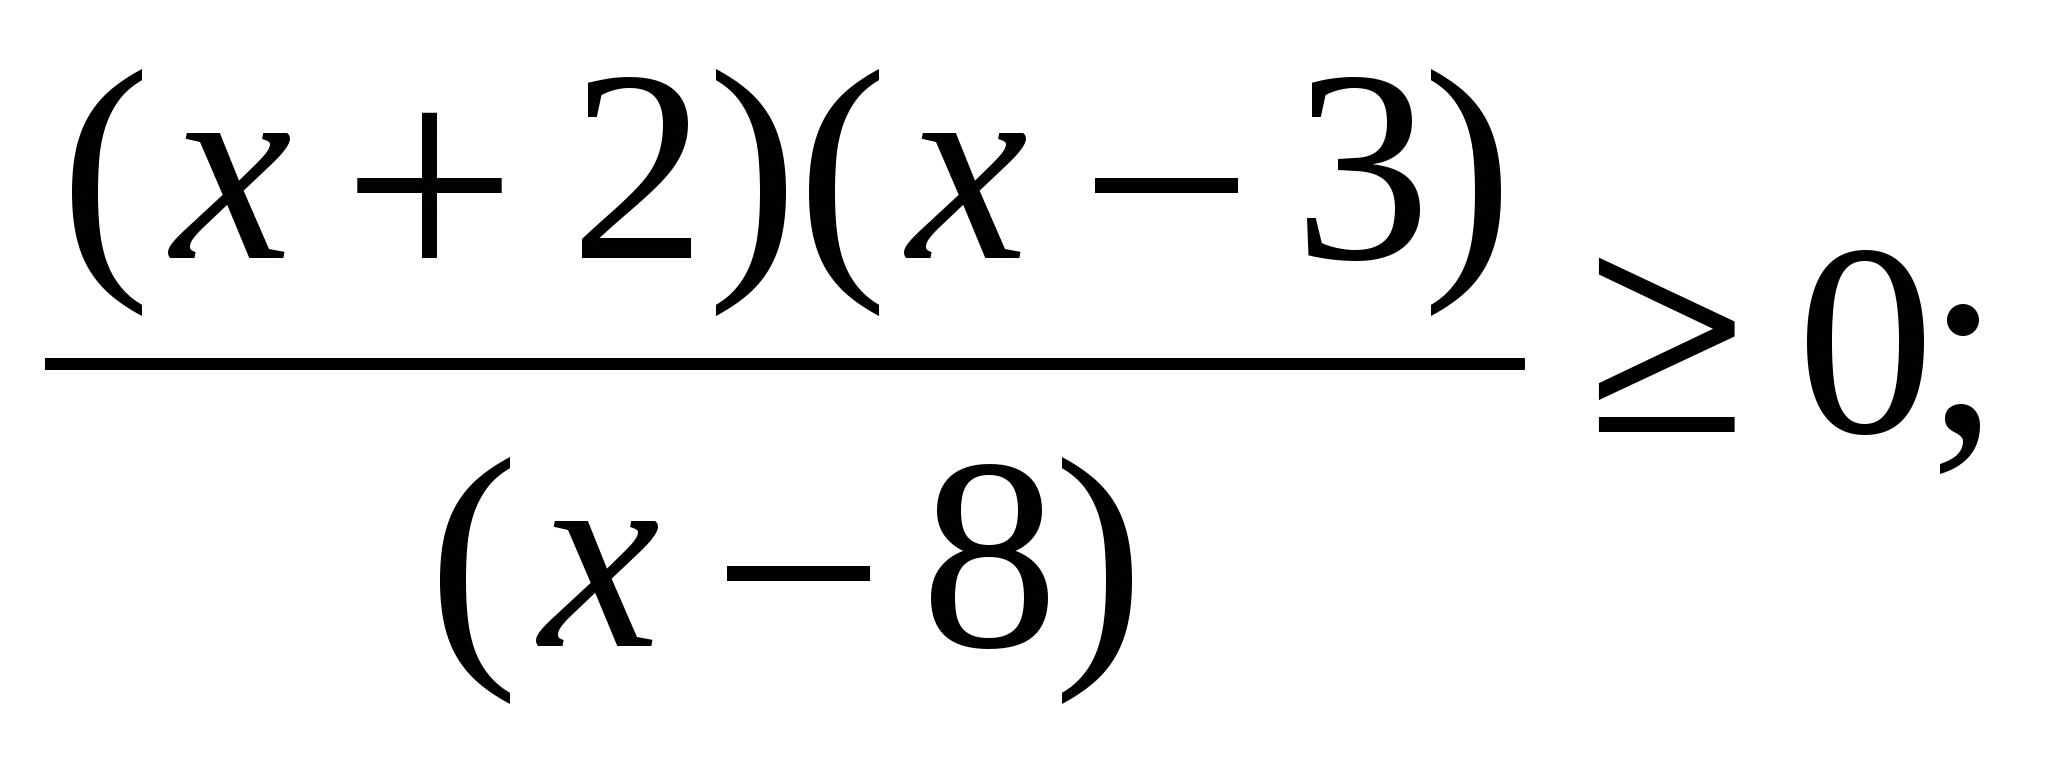 Конспект урока по алгебре для 9 класса по теме Решение неравенств методом интервалов